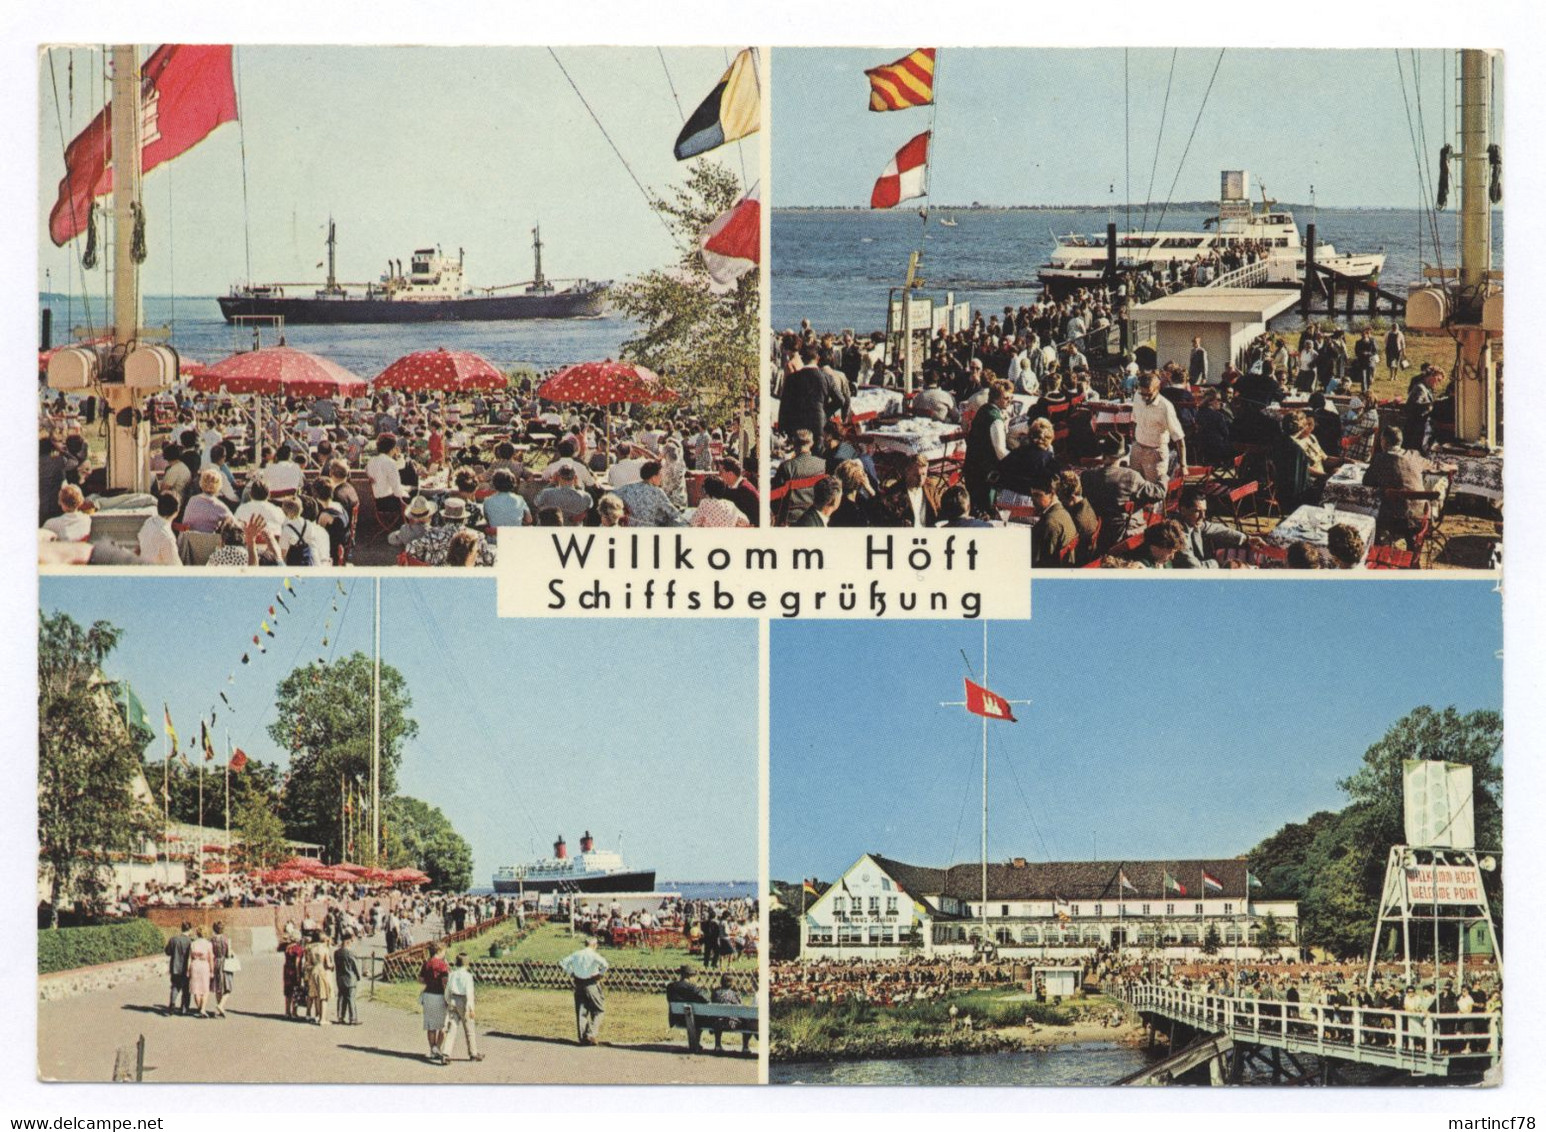 2000 Willkomm Höft Schiffsbegrüßung Wedel In Holstein Schulauer Fährhaus Gel. 1967 Hamburg - Wedel